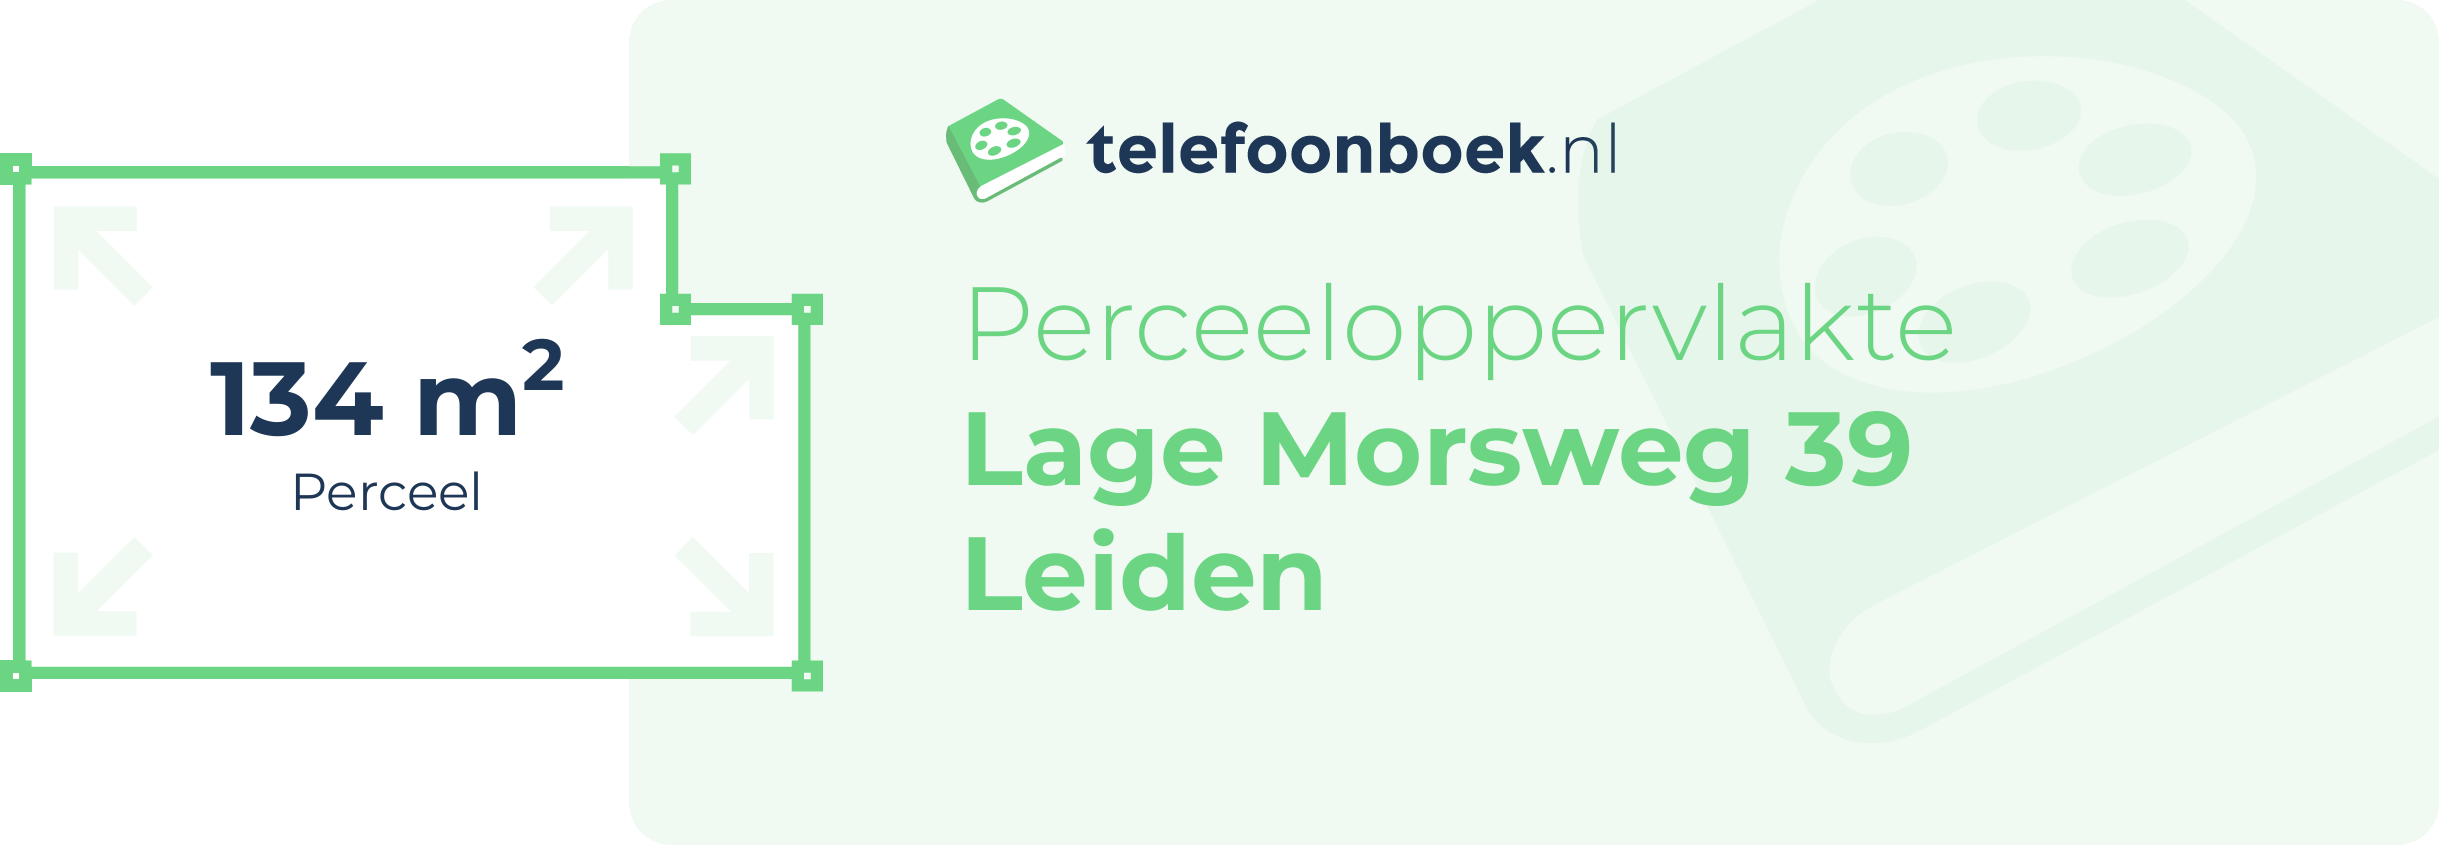 Perceeloppervlakte Lage Morsweg 39 Leiden